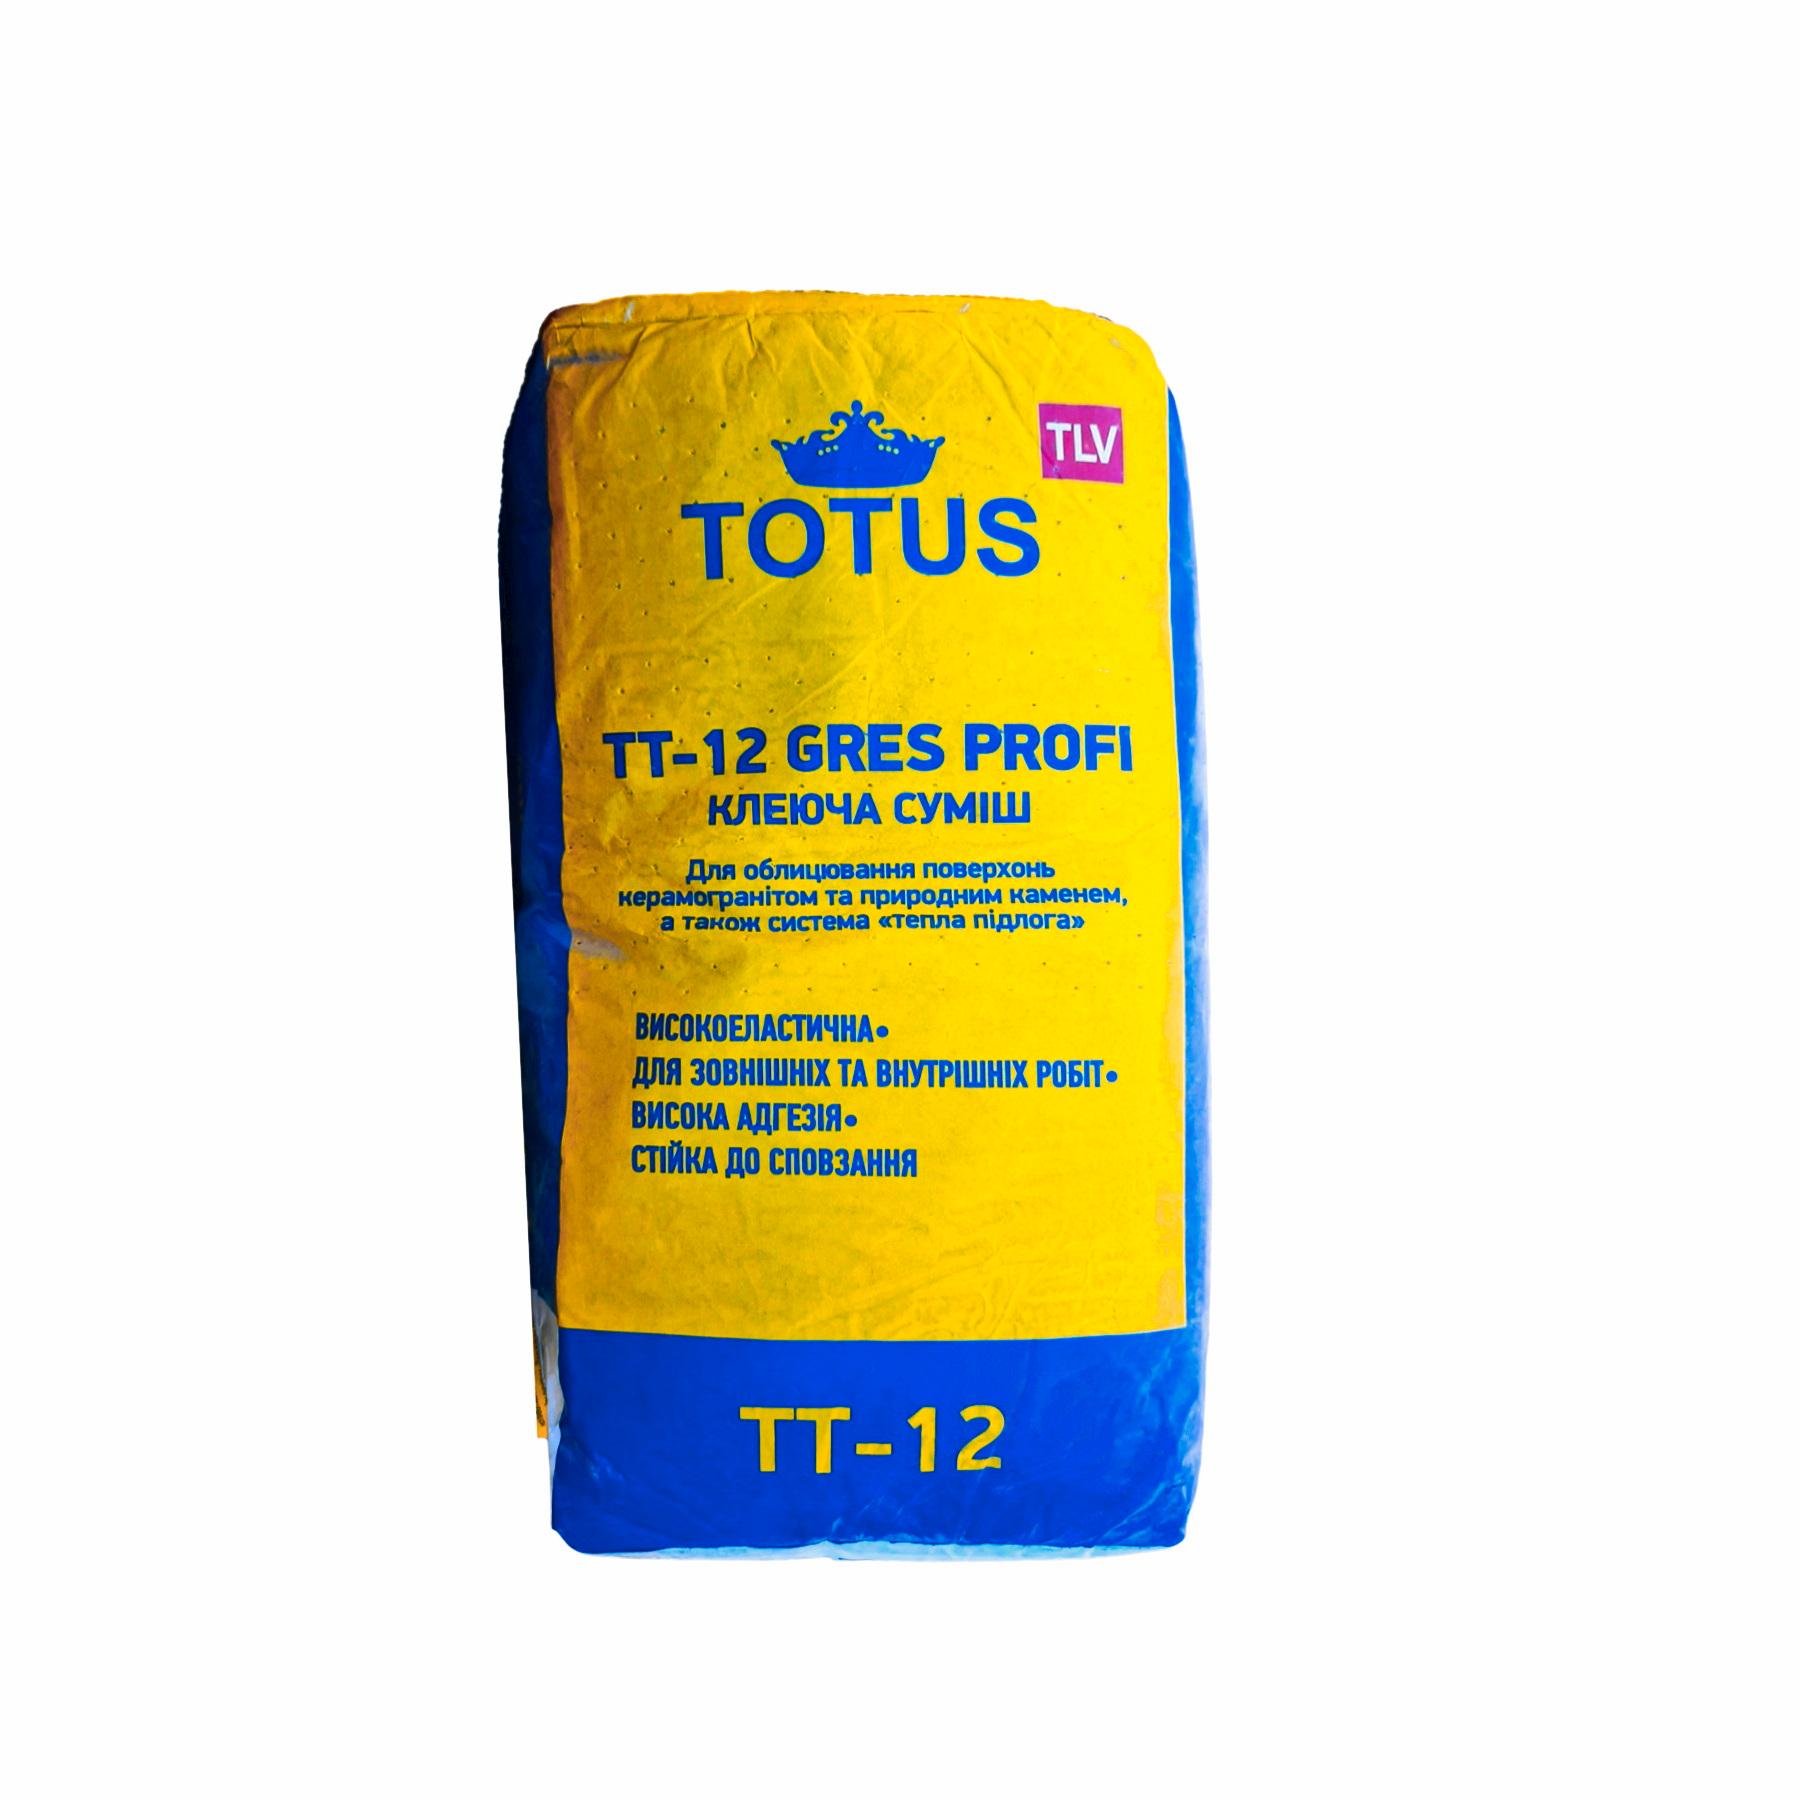 Клеящая смесь для облицовки полов Totus TT-12 Gres (34296)